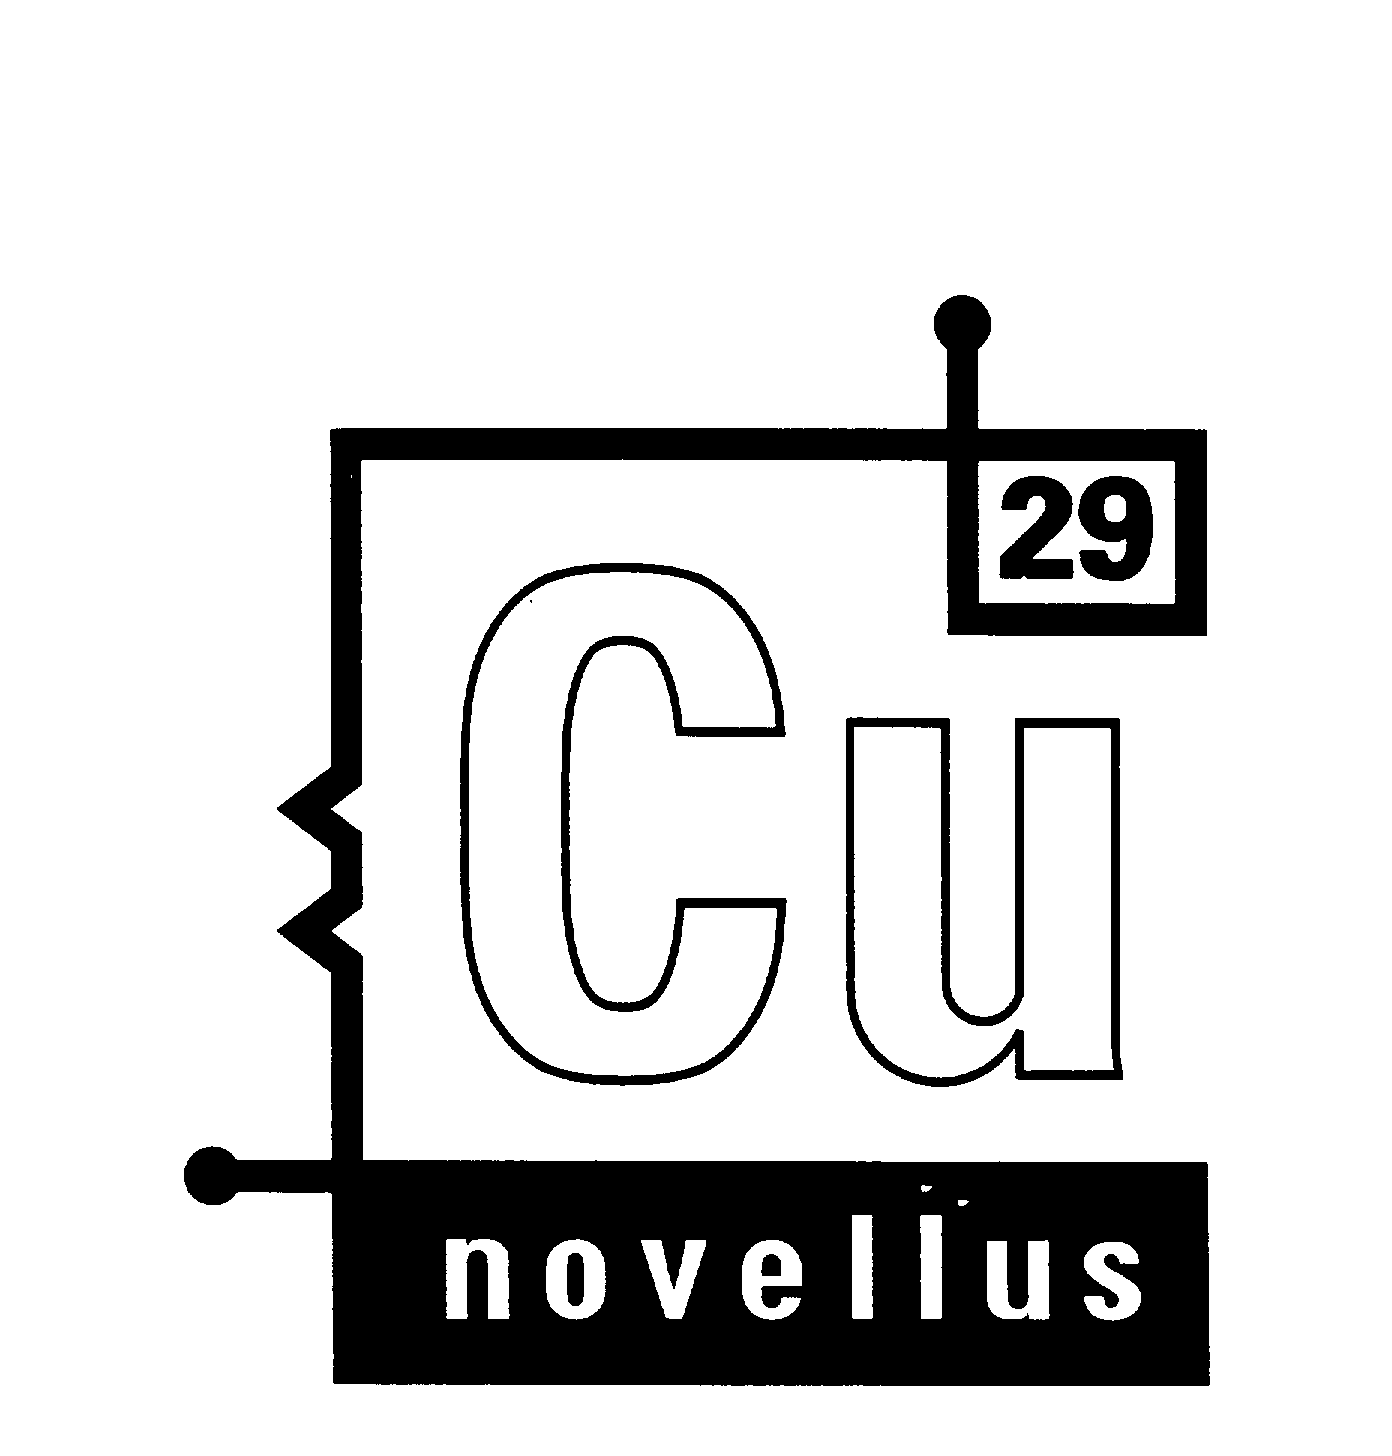  CU29 NOVELLUS